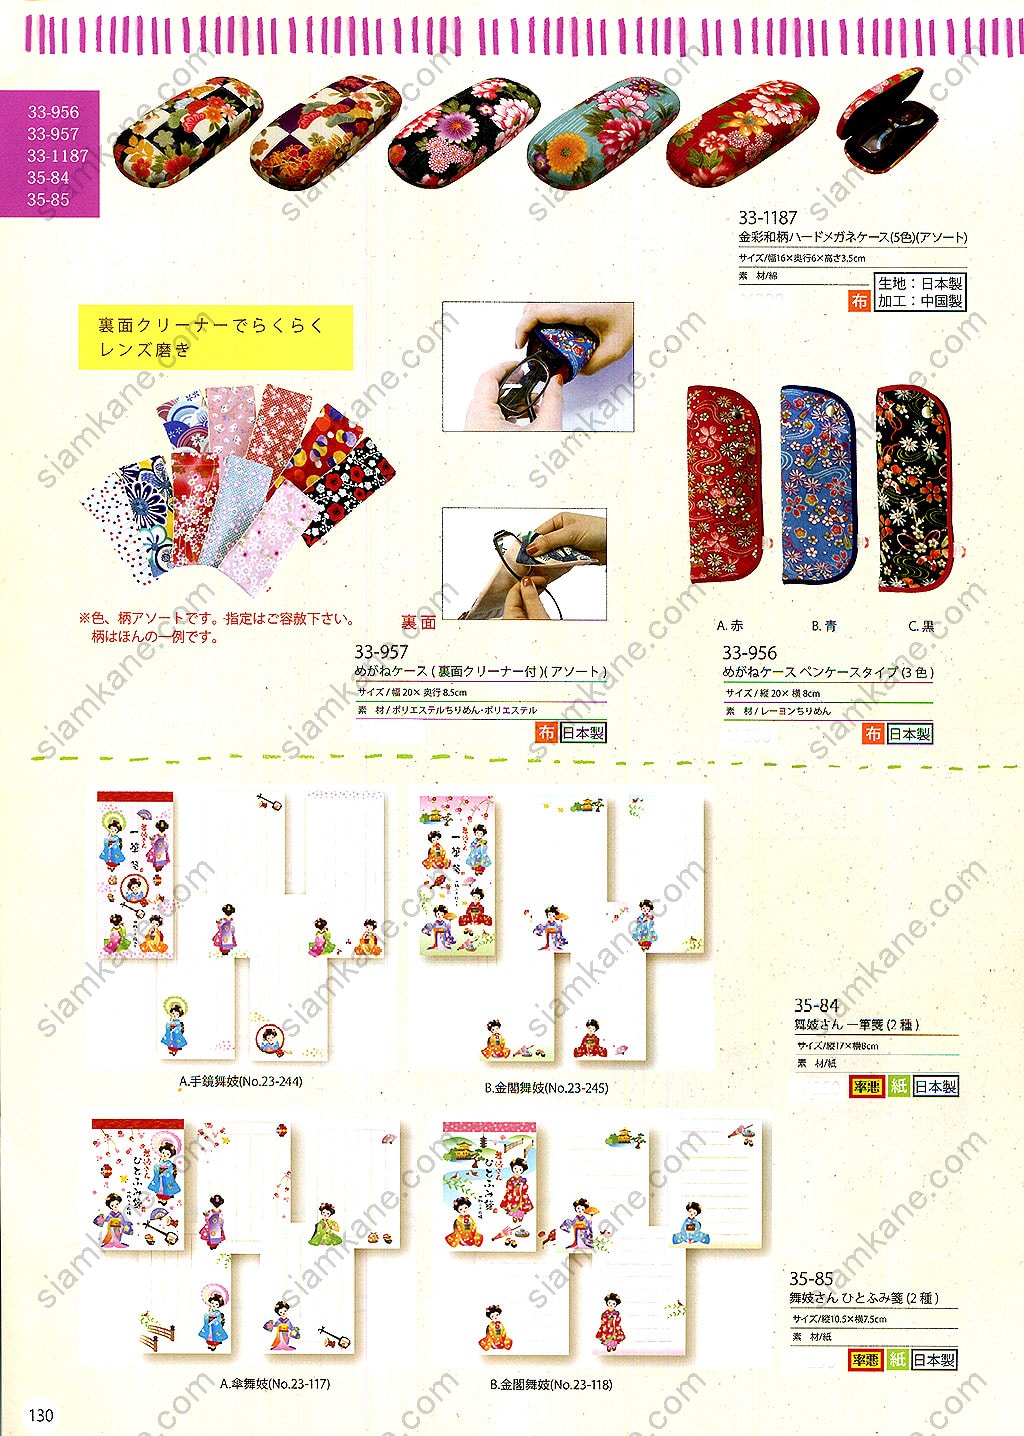 หน้า 13 แมวกวัก เครื่องรางญี่ปุ่น ของฝากจากญี่ปุ่น แคตตาล็อกออนไลน์ สั่งได้ทุกรุ่น